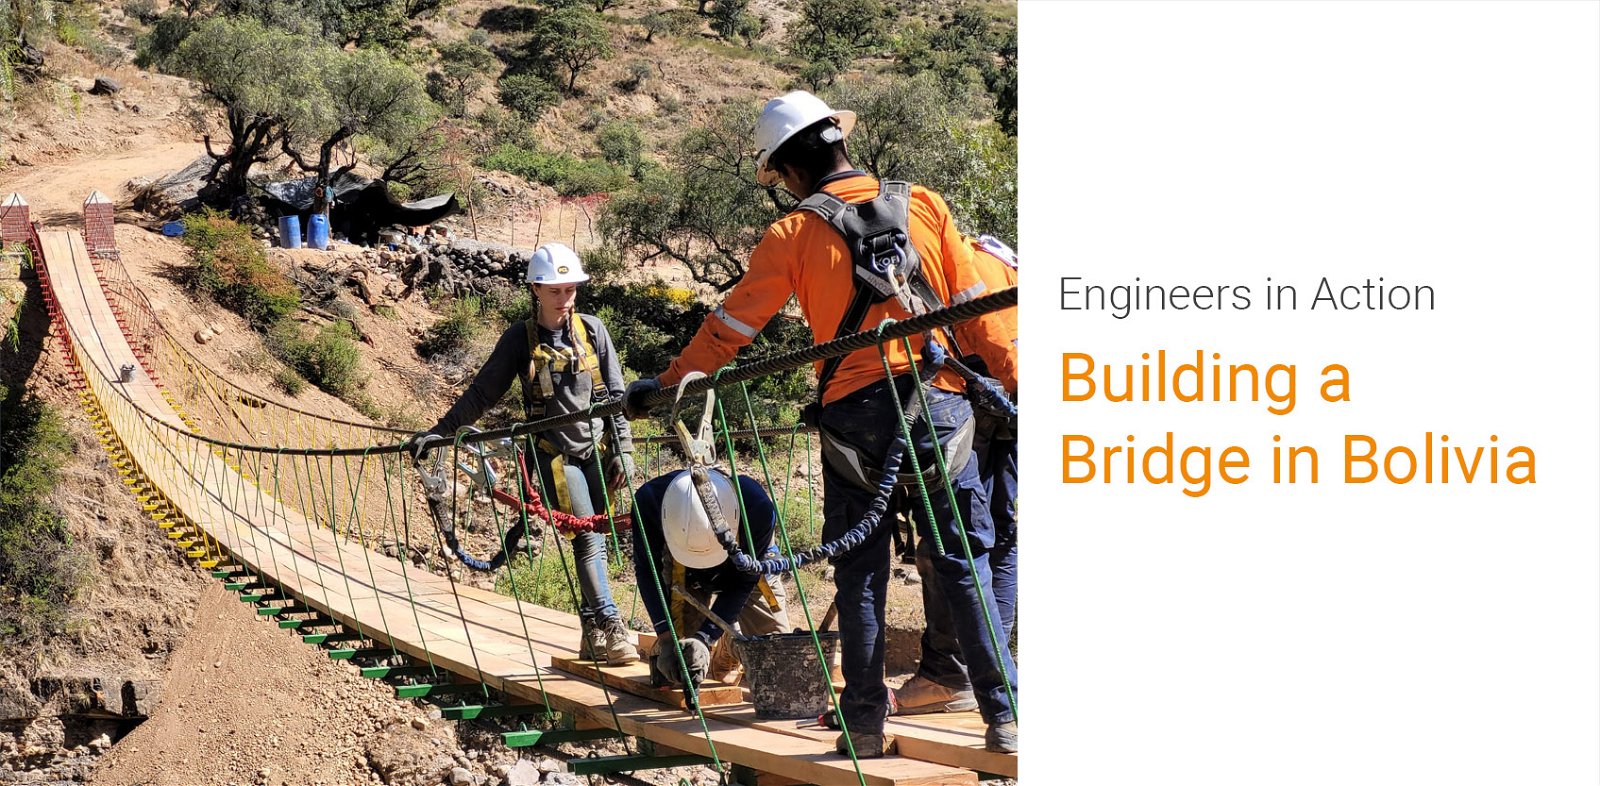 University of Alberta Engineers in Action Helps Build Bridge in Bolivia